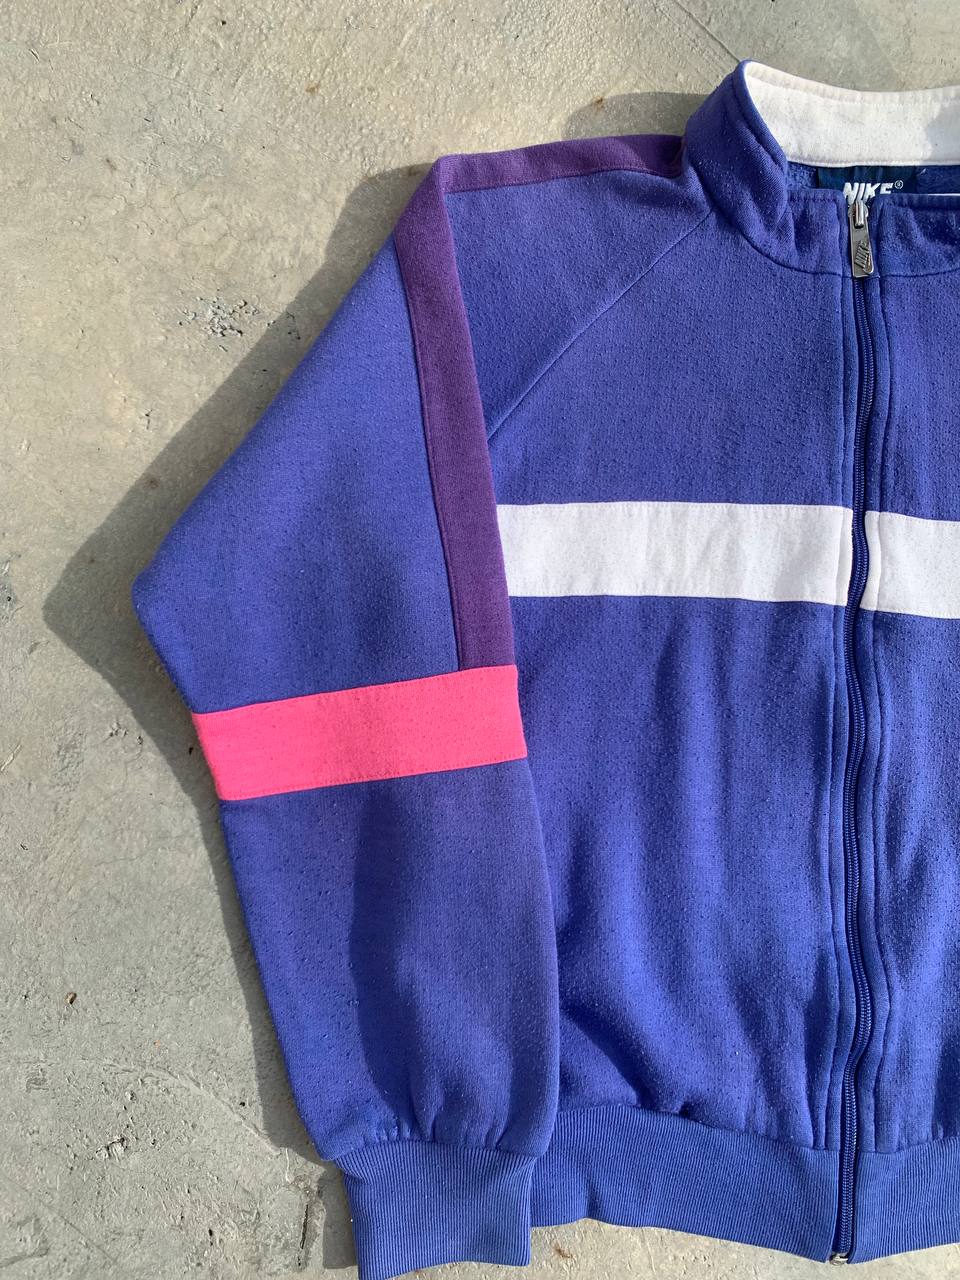 Vintage Nike Colorblock Zip Up Sweatshirt - 4